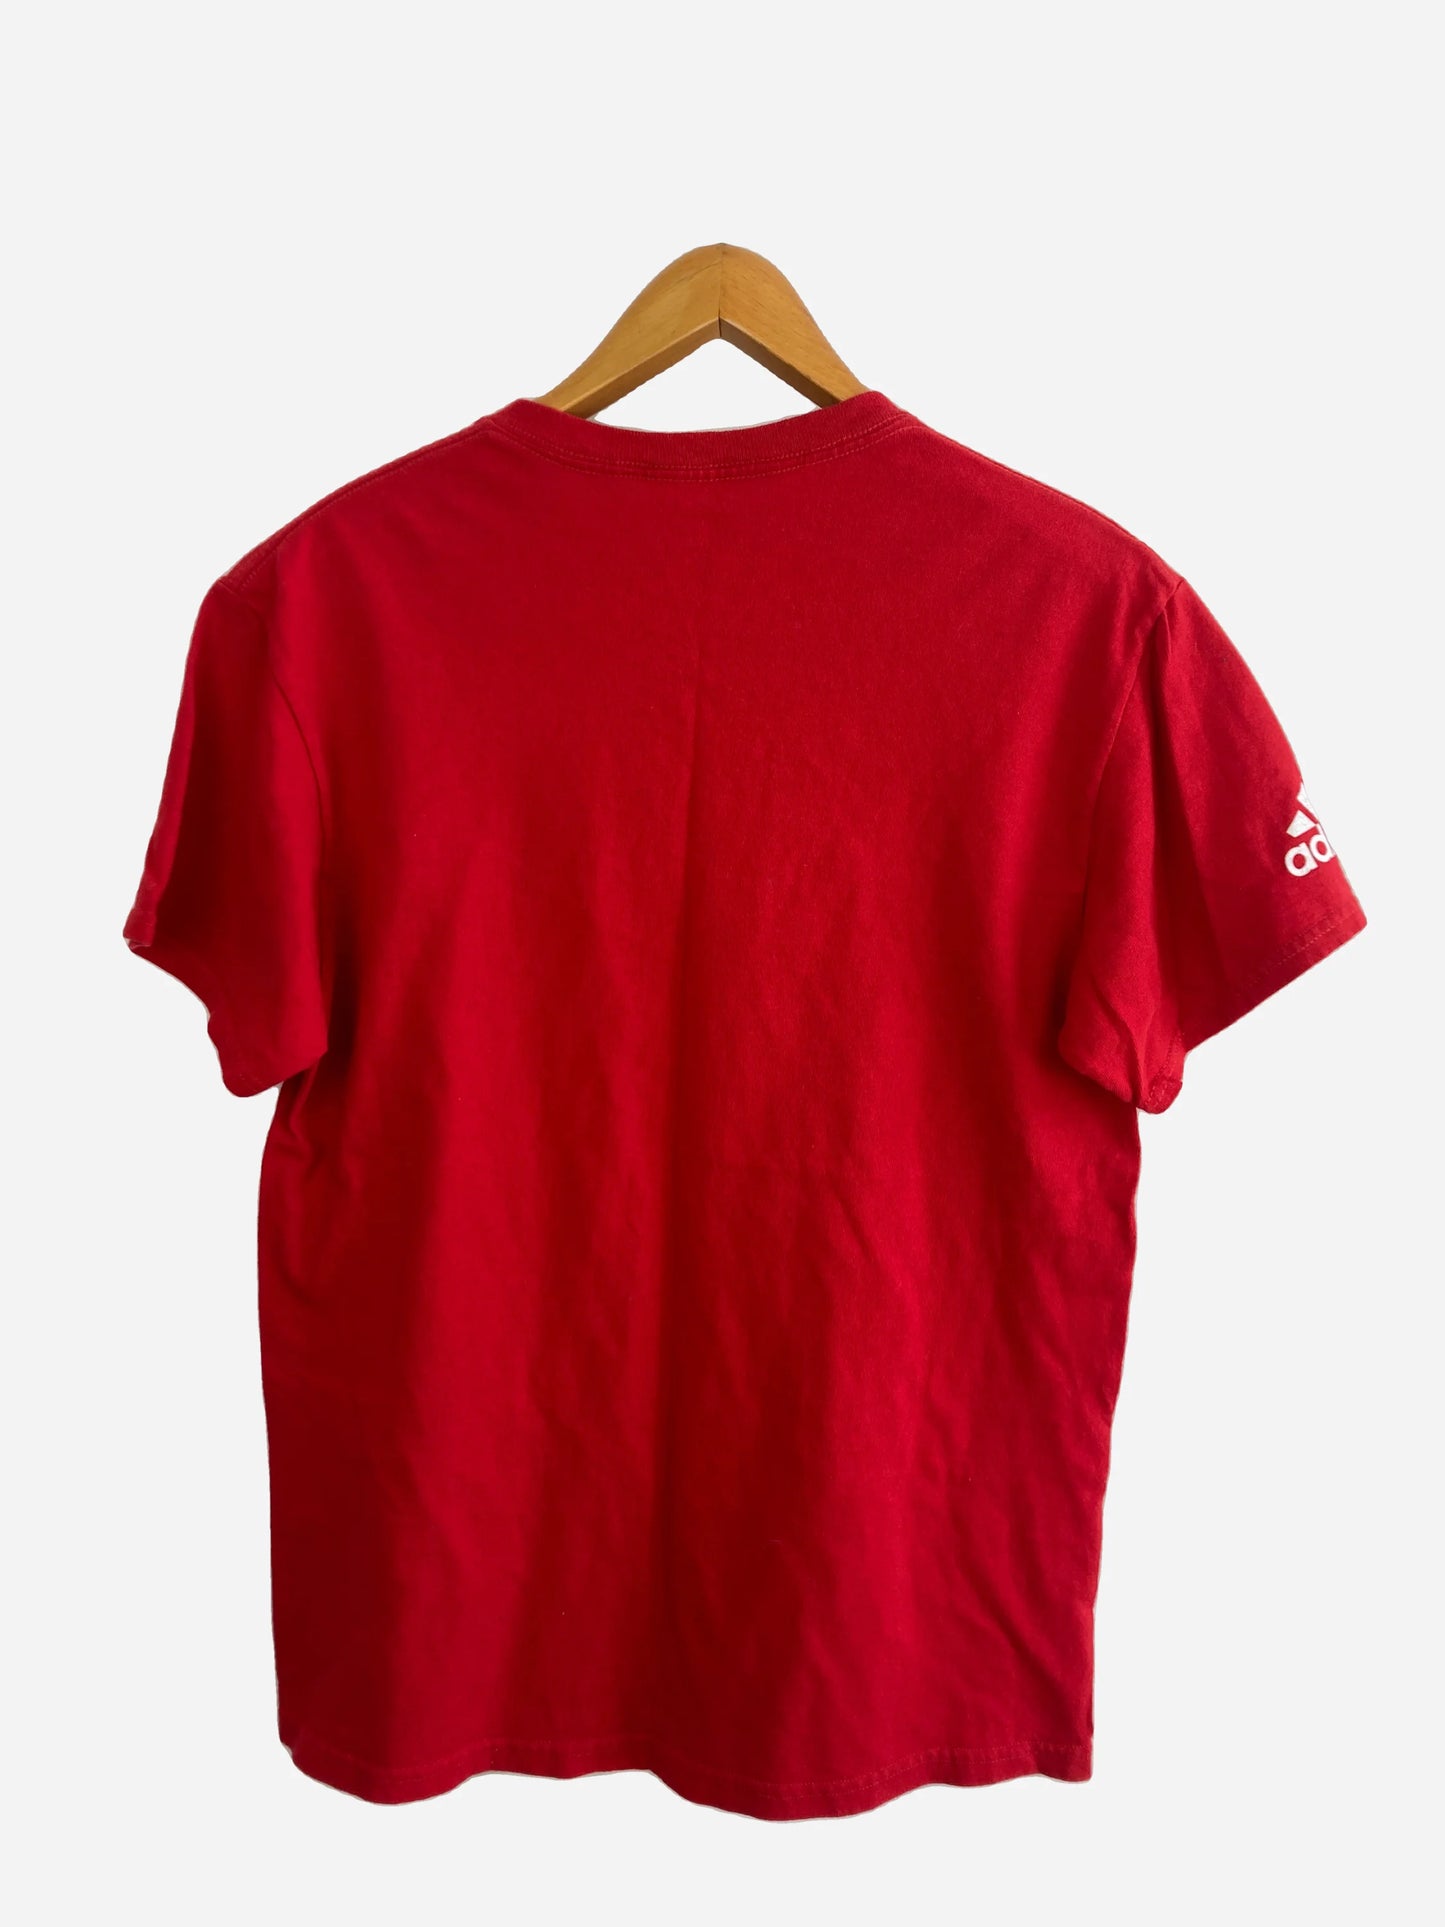 Adidas „Red Bull New York“ T-Shirt (S)